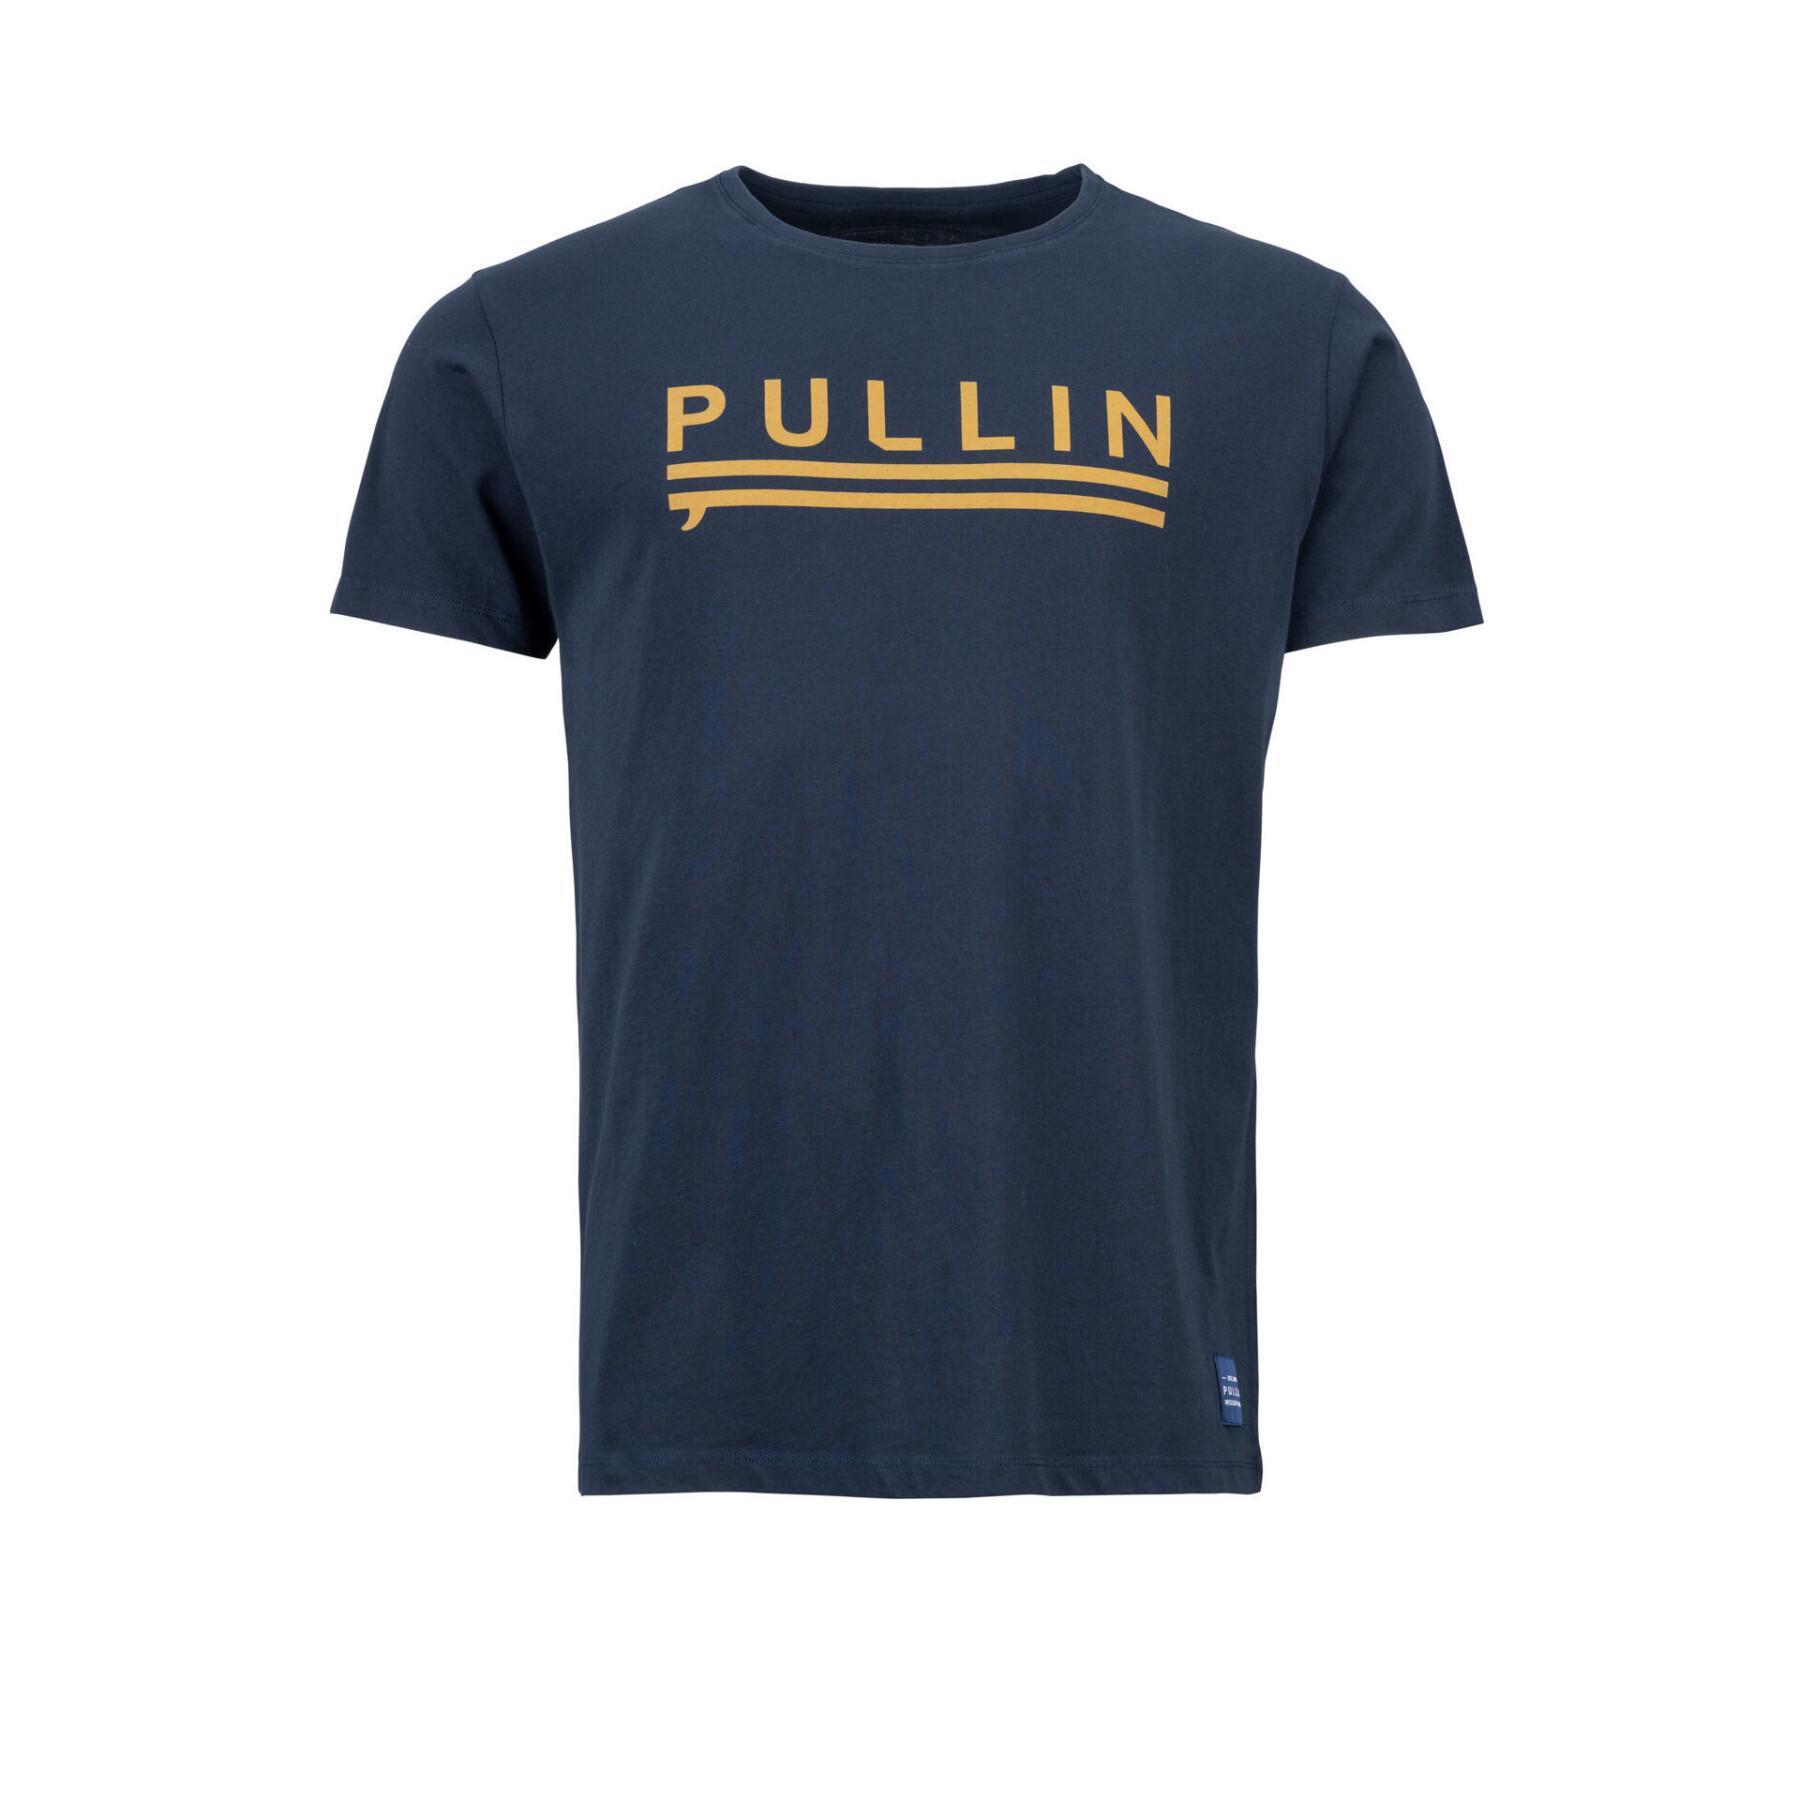 Camiseta Pull-in